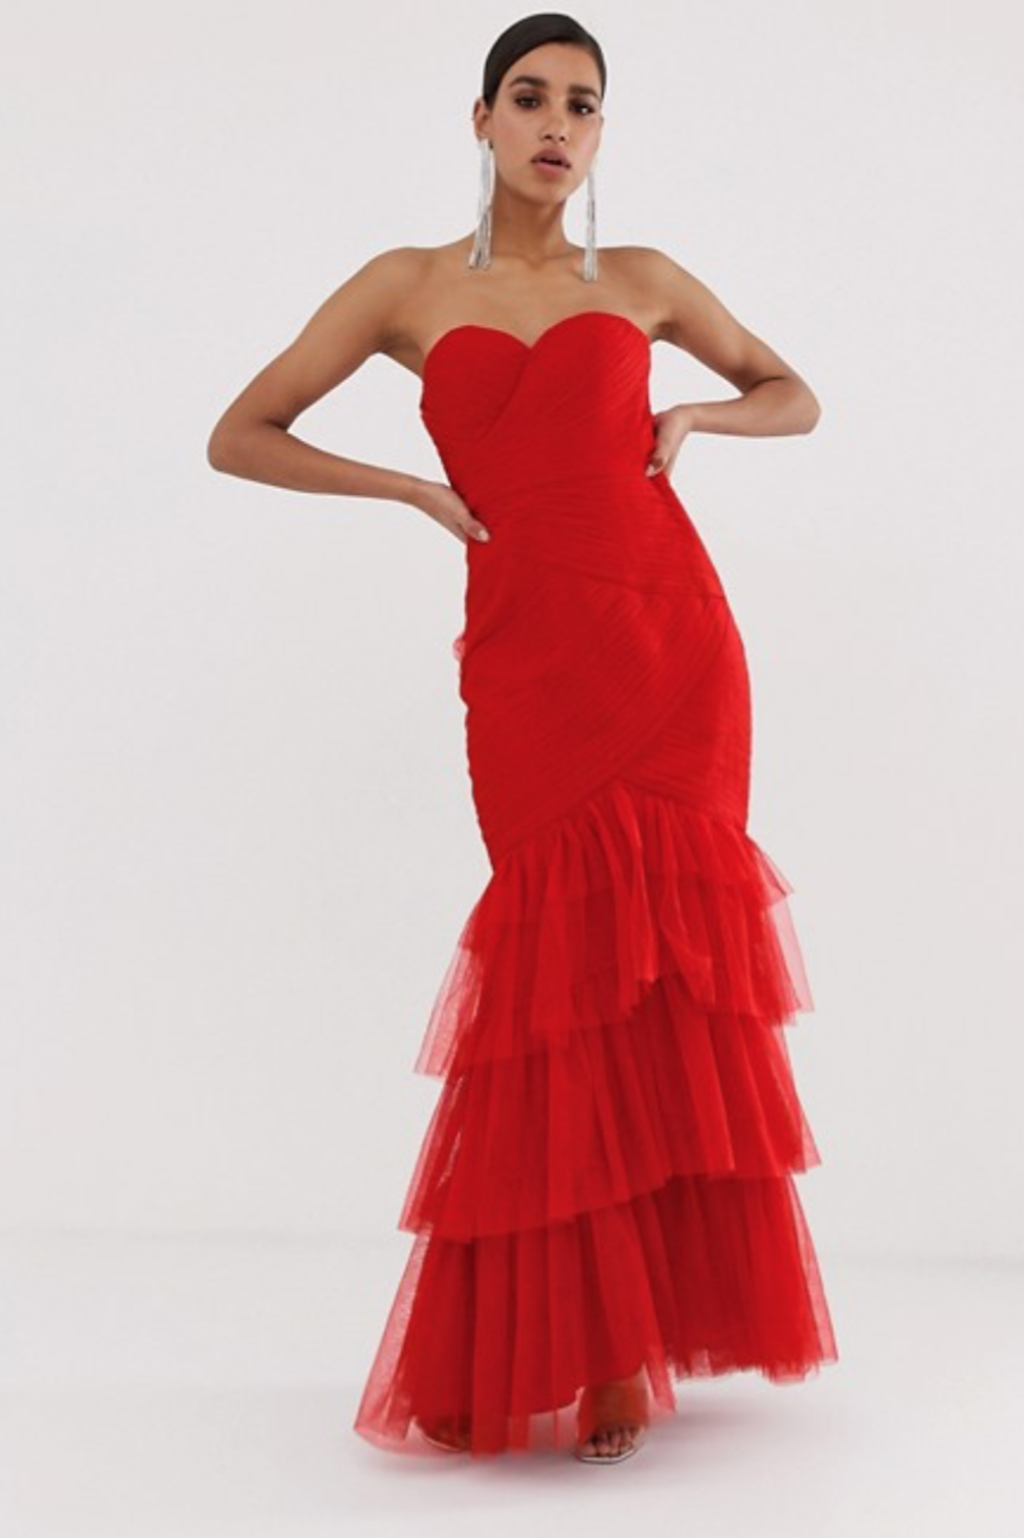 ASOS red dress